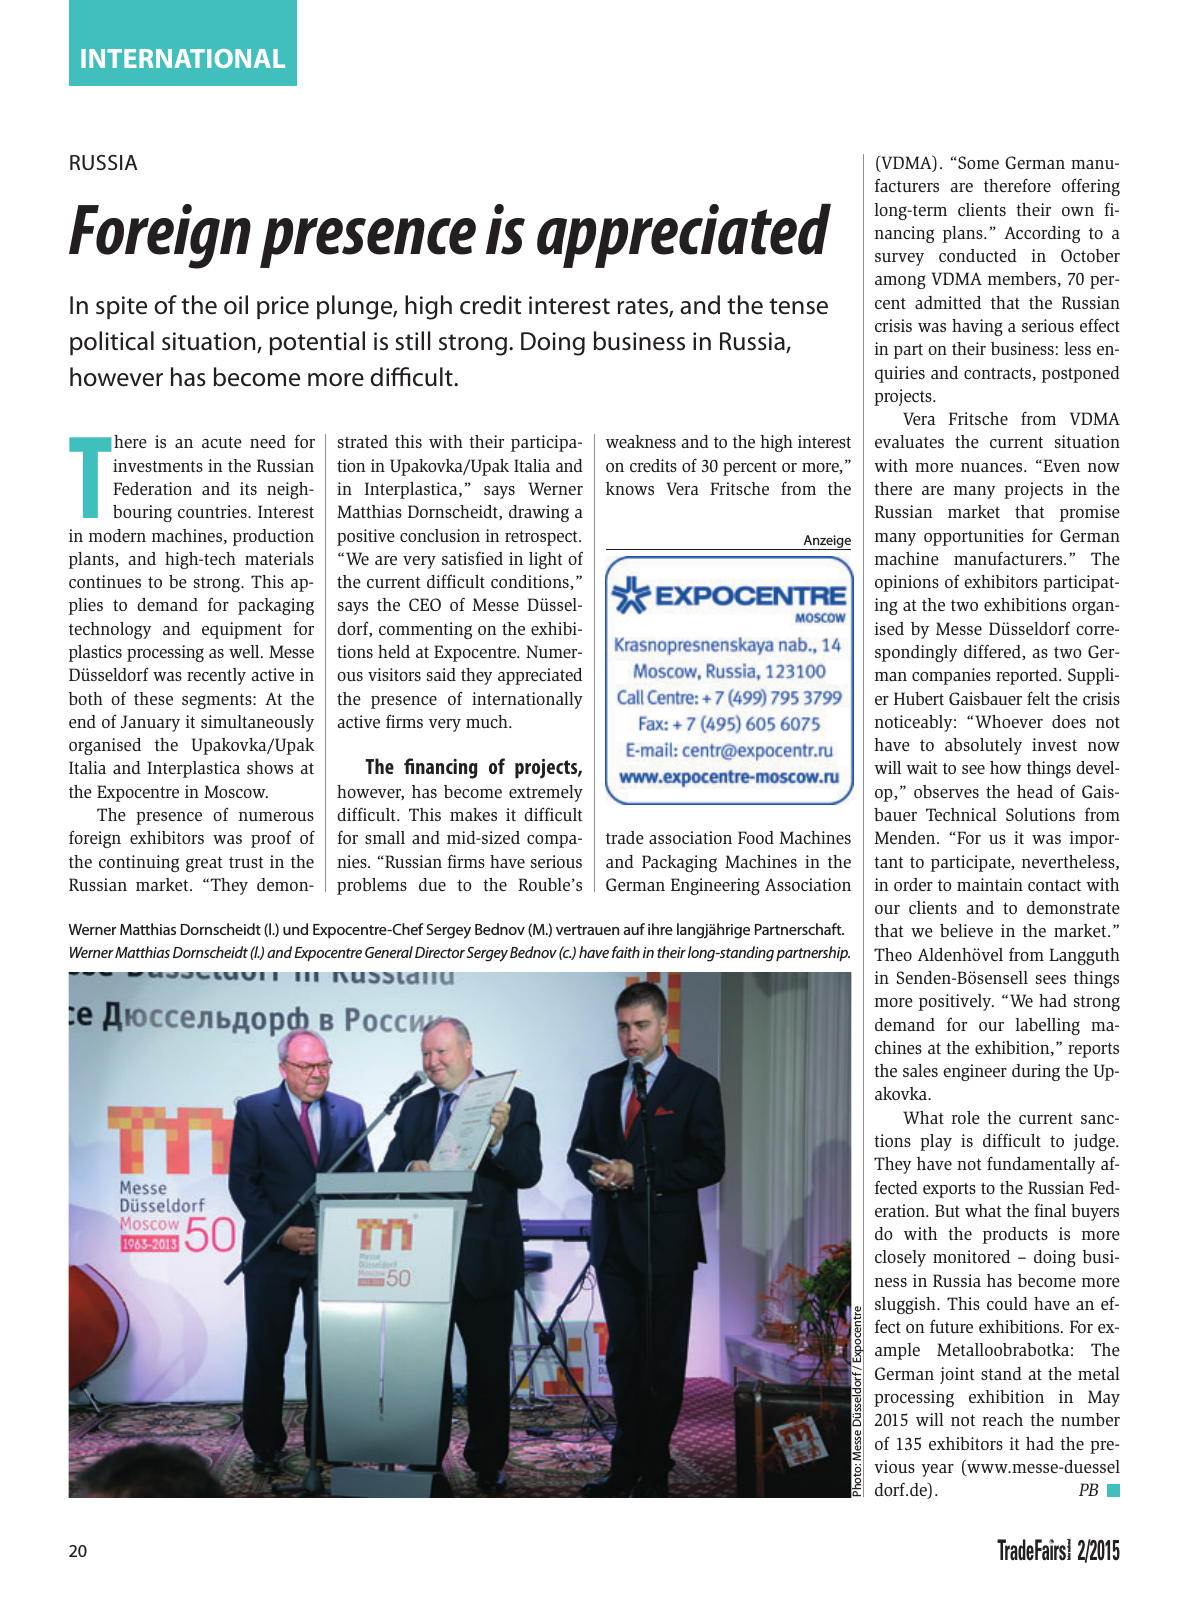 Vorschau TFI Trade-Fairs-International 02/2015 Seite 20